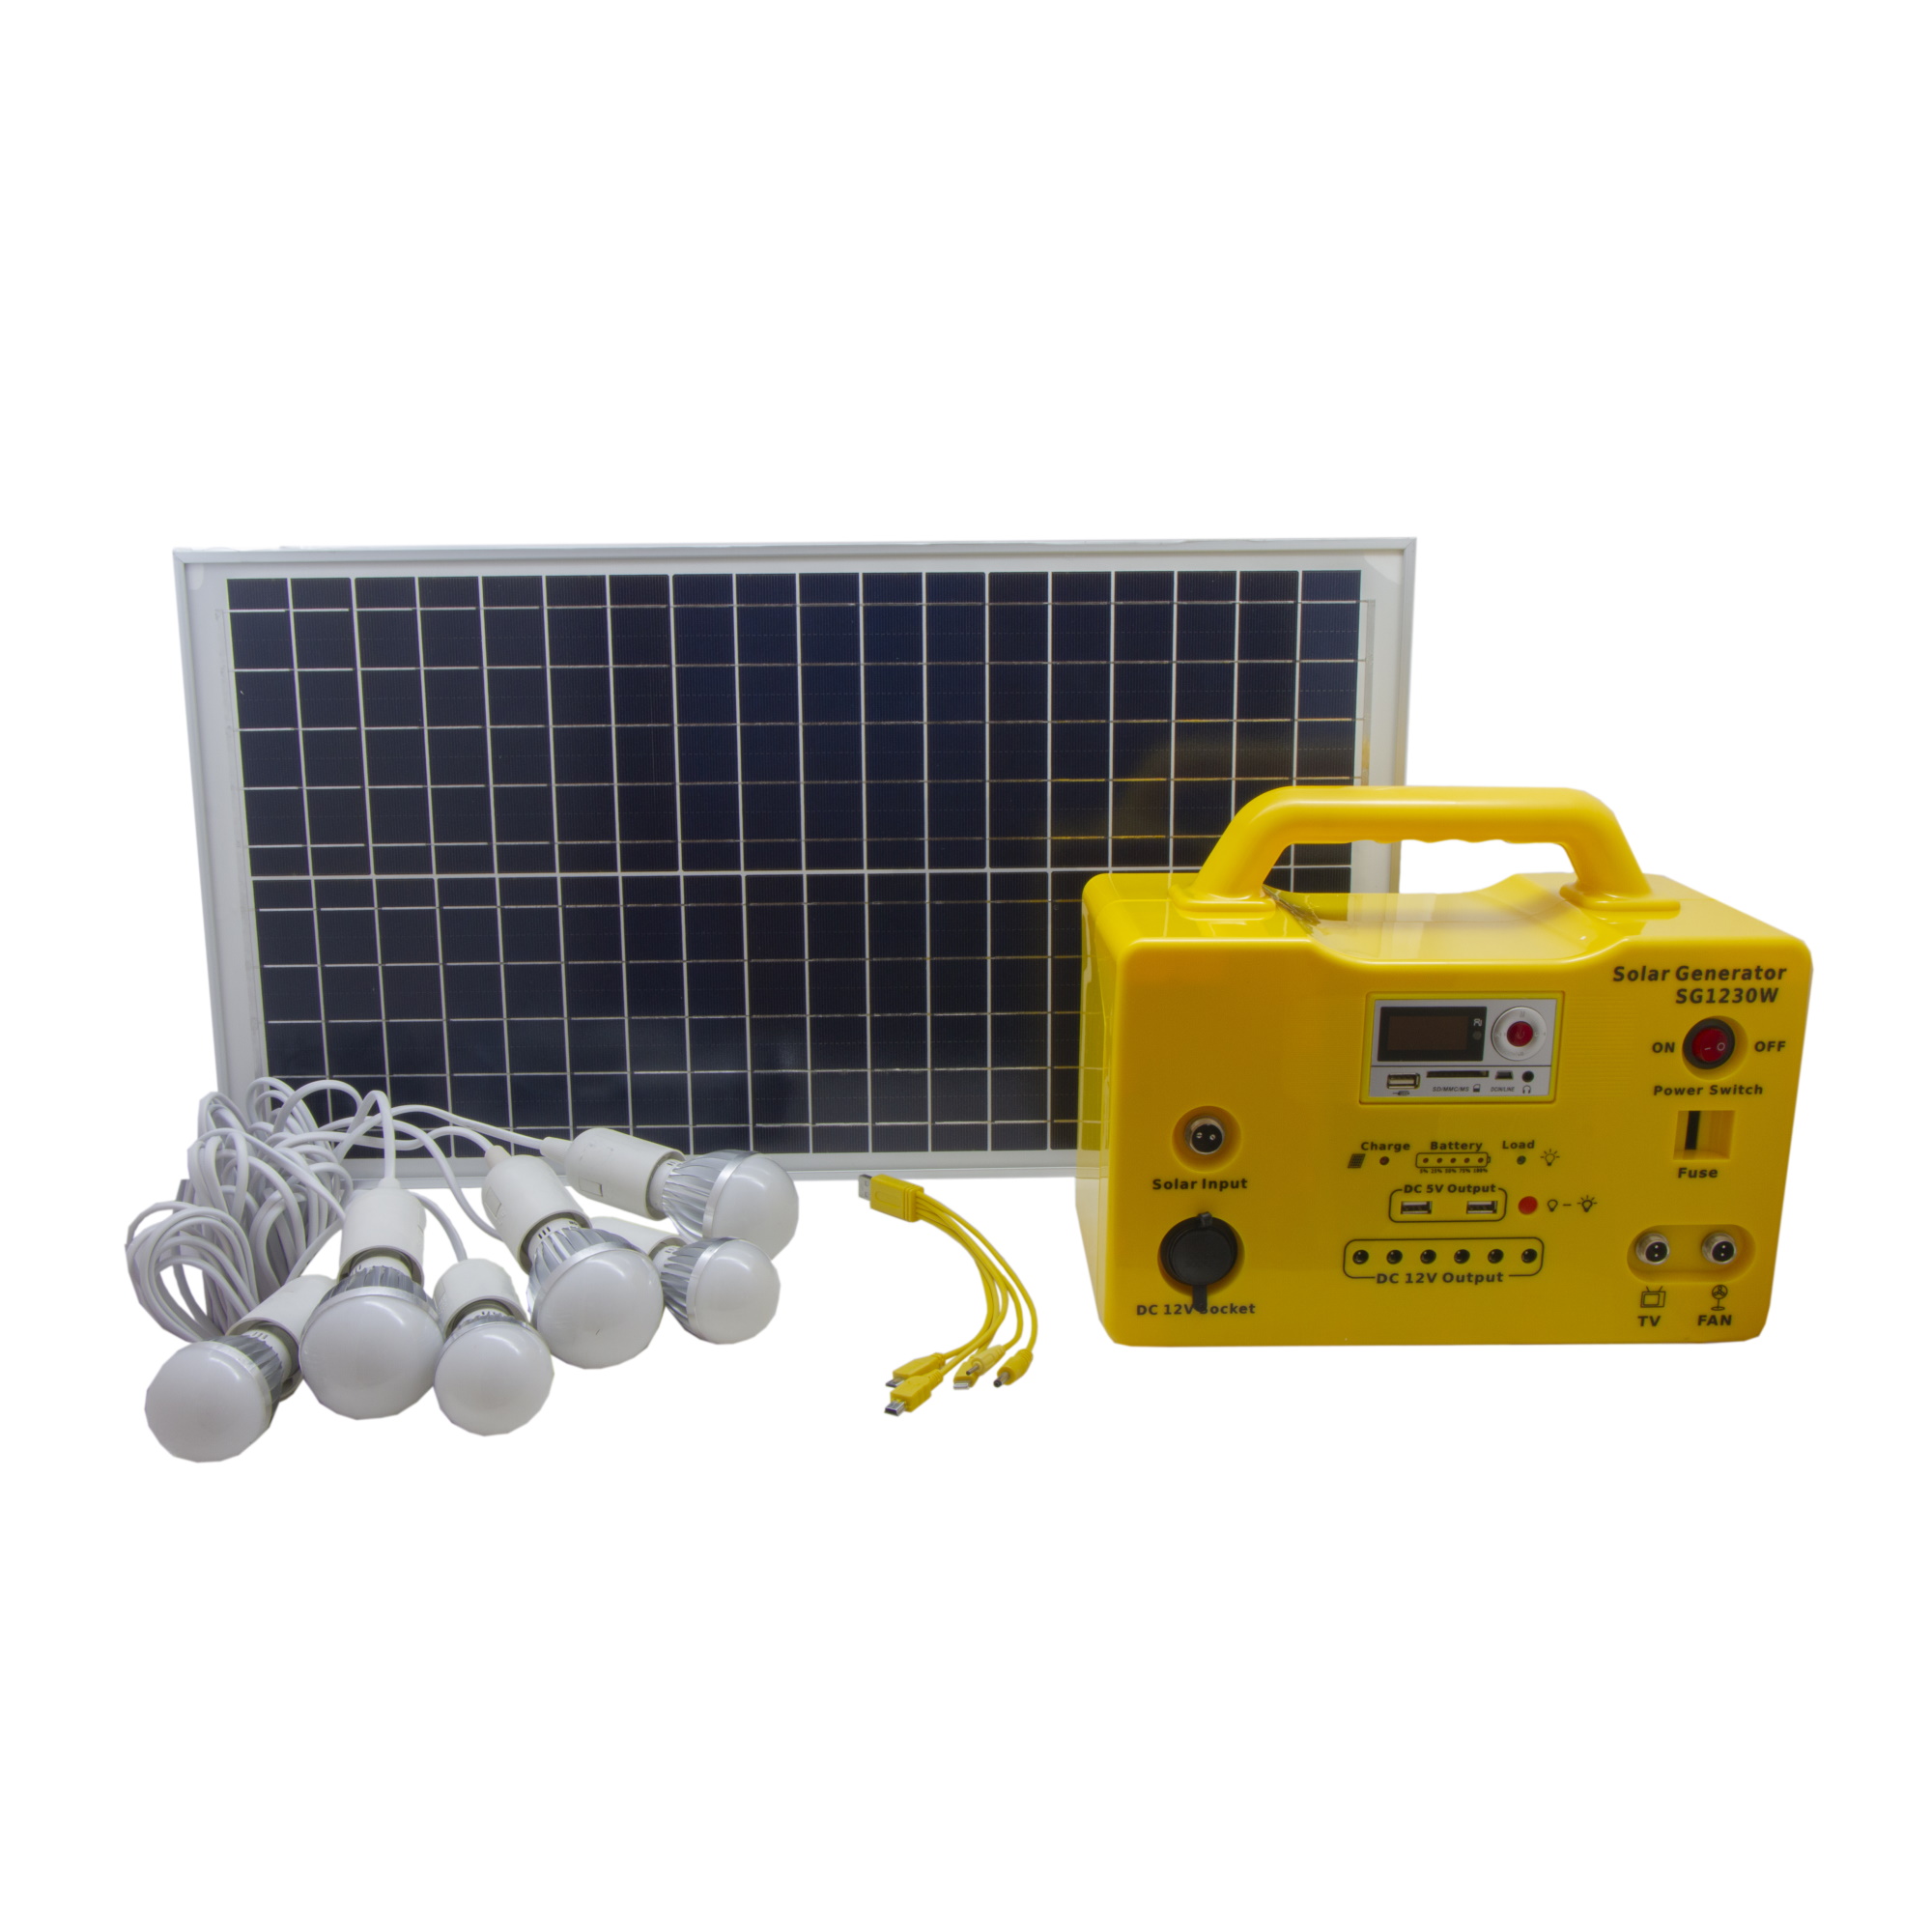 سیستم خورشیدی مدل SG1230W